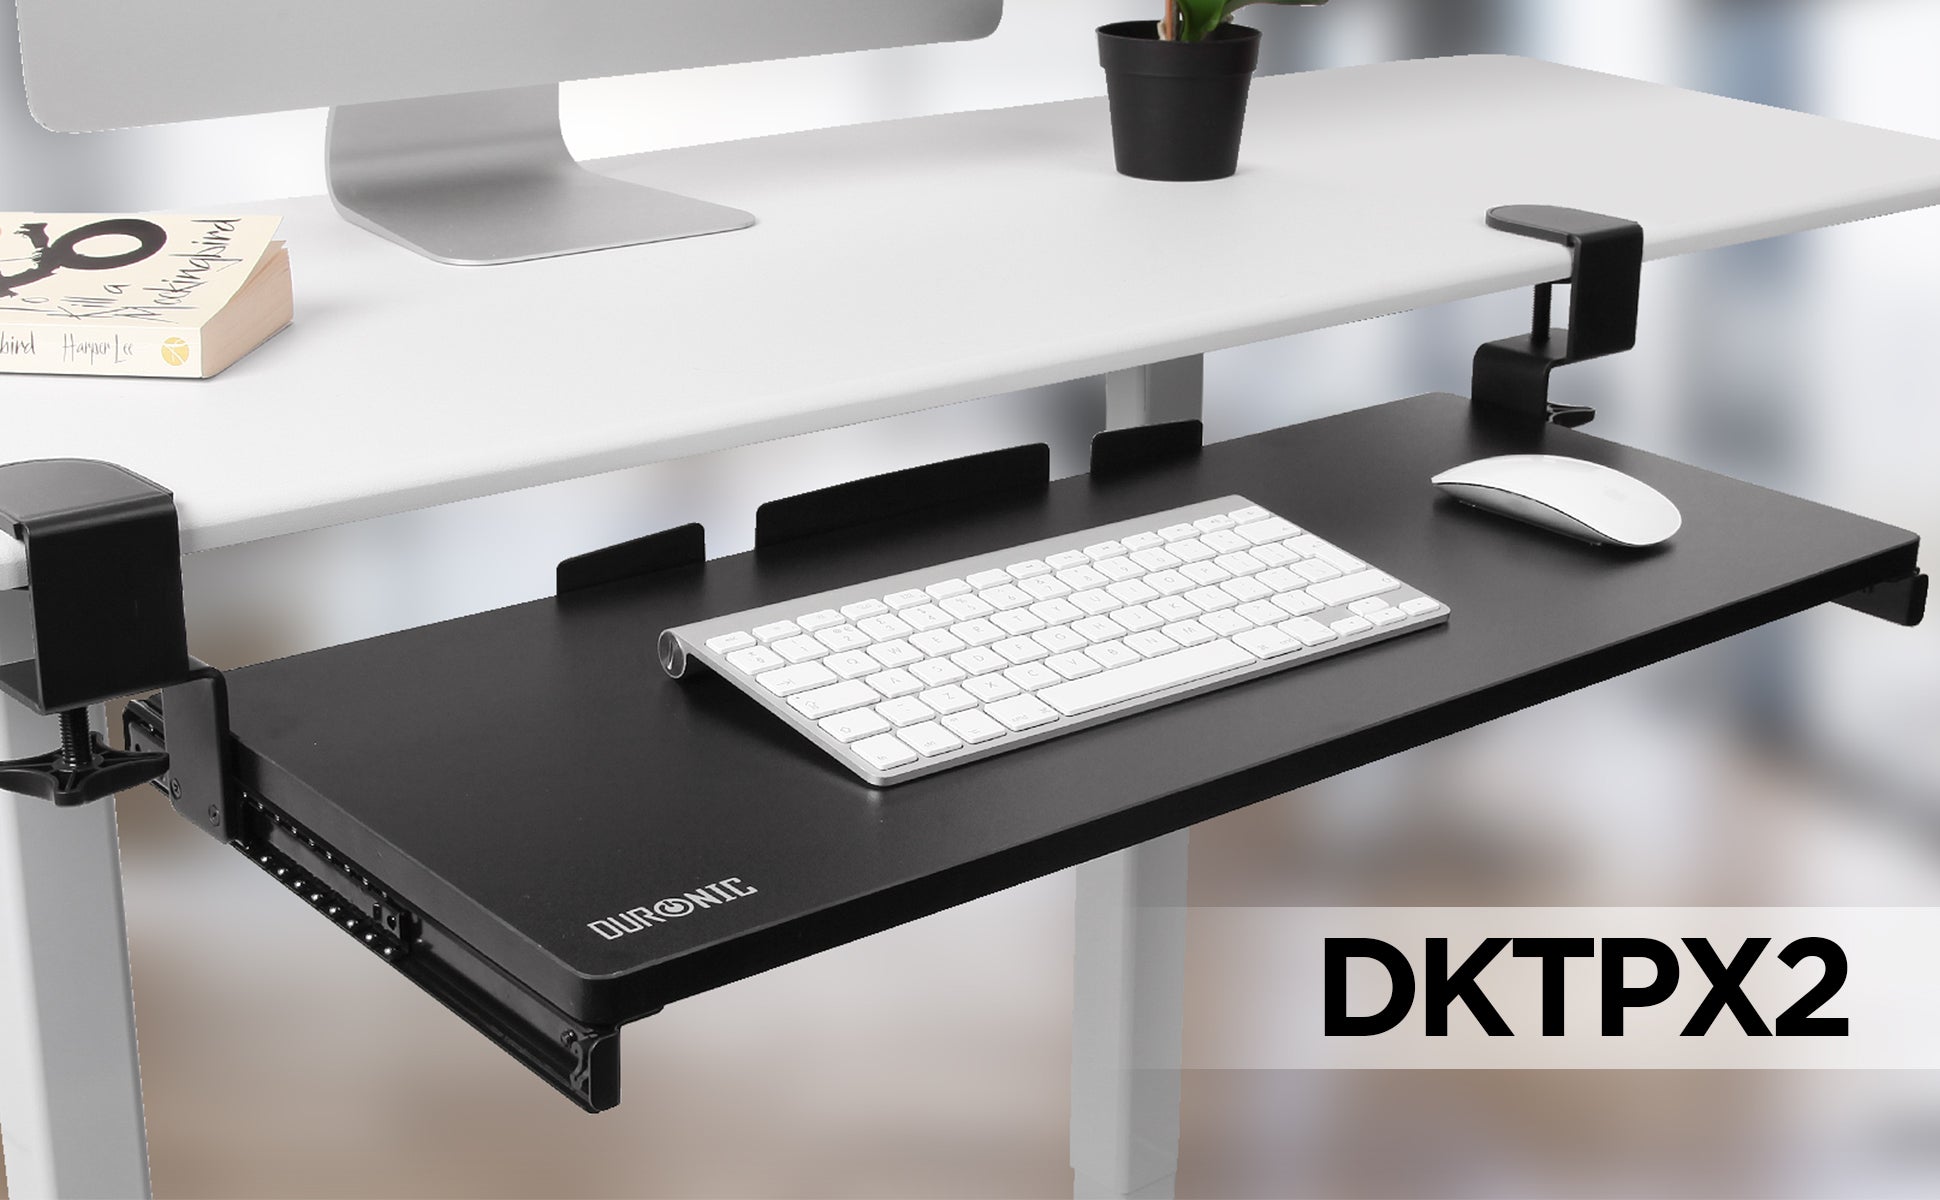 Duronic DKTPX1 Supporto scorrevole per tastiera e mouse / laptop / doc—  duronic-it